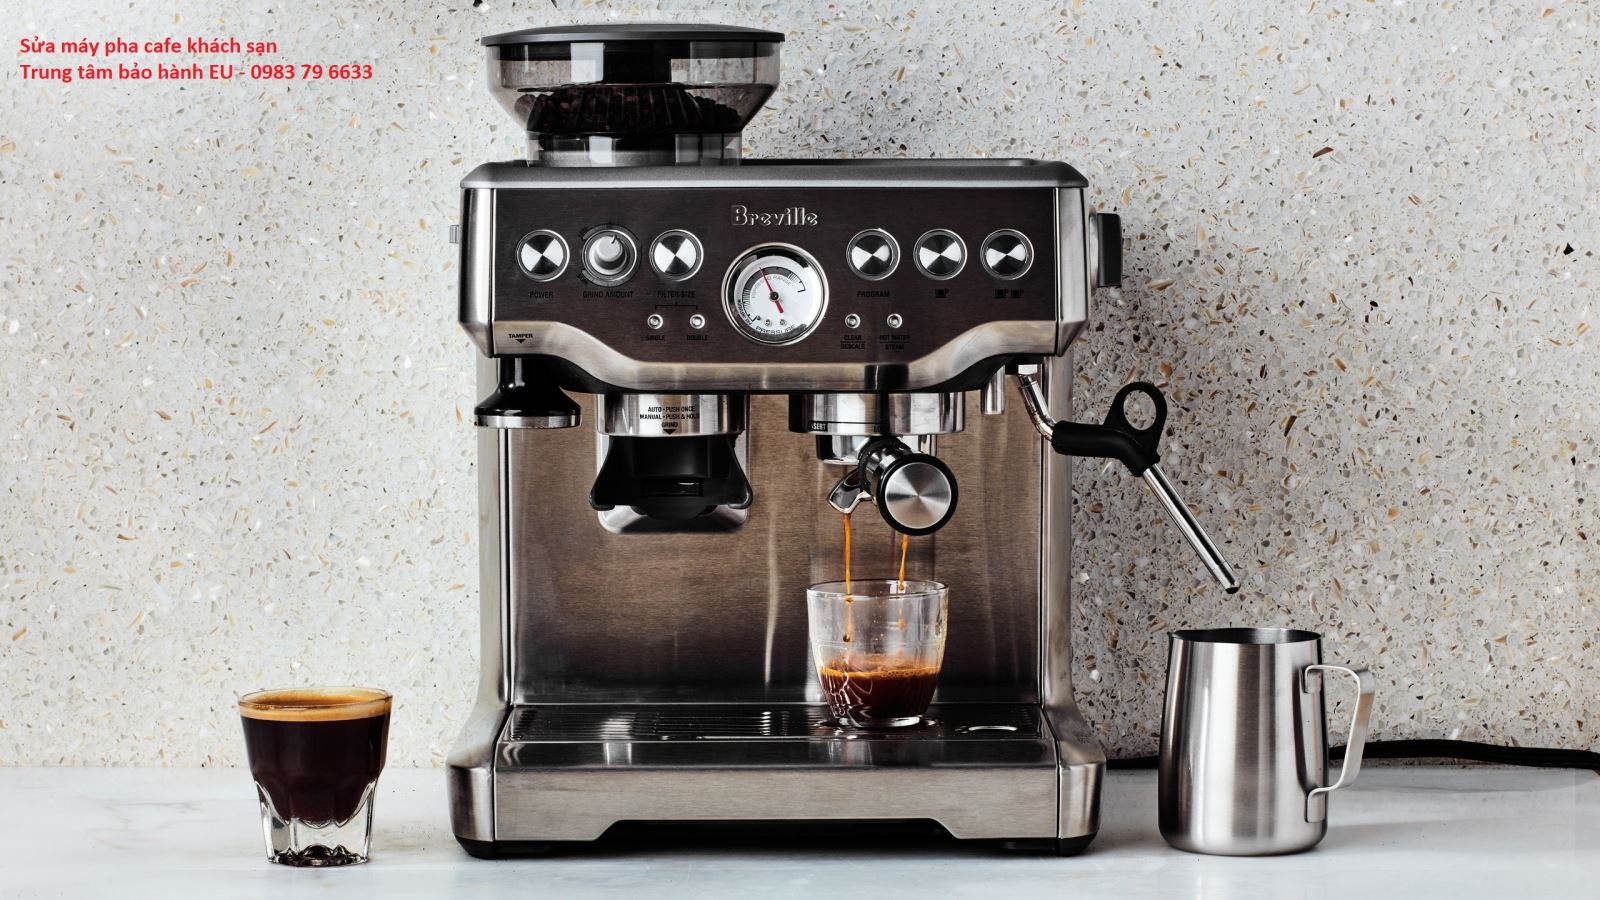 Khi máy pha cà phê xảy ra các lỗi sẽ ảnh hưởng đến hương vị và chất lượng của cà phê